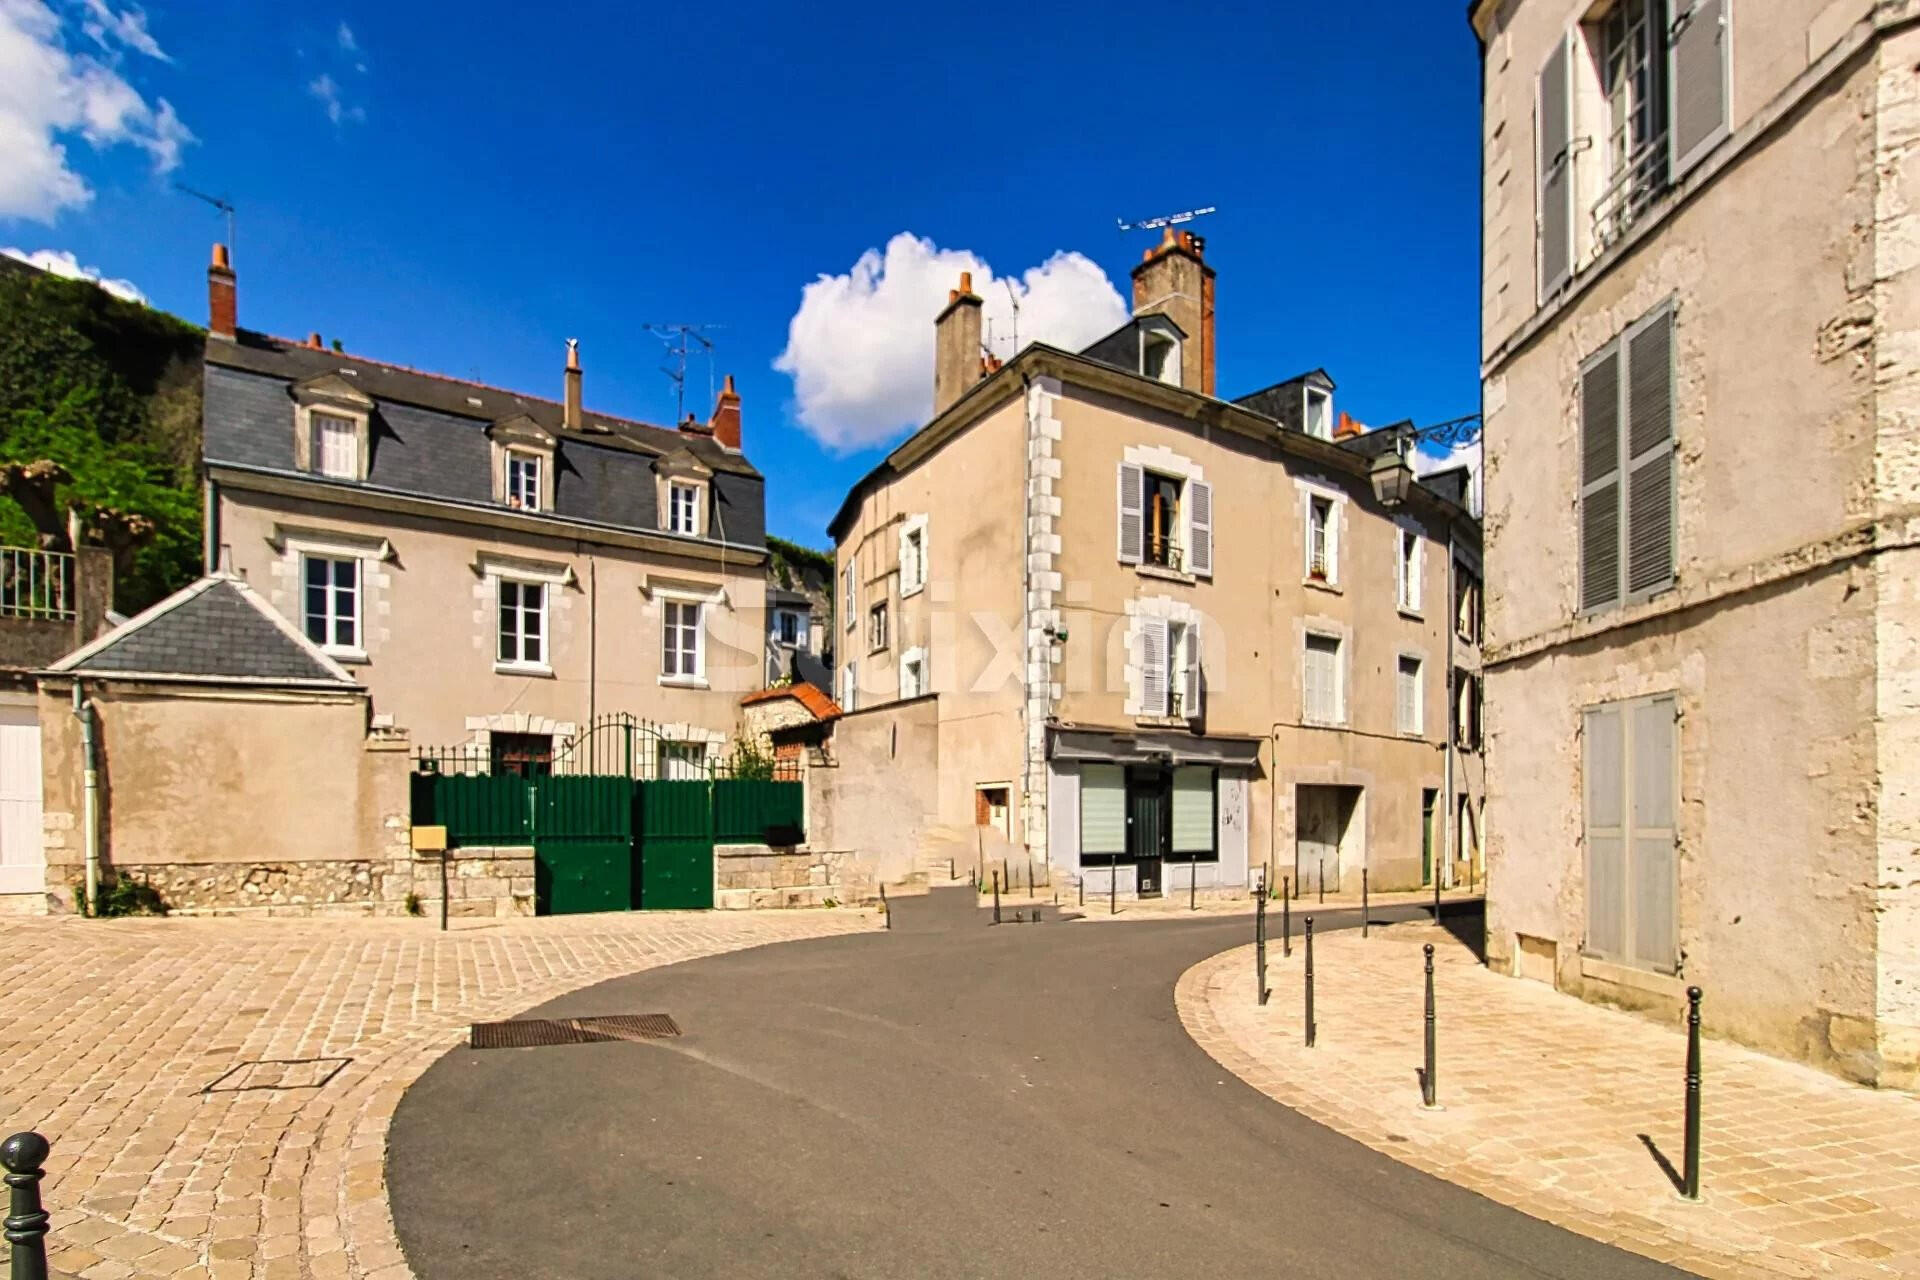 Immeuble d'habitations au cœur de Blois